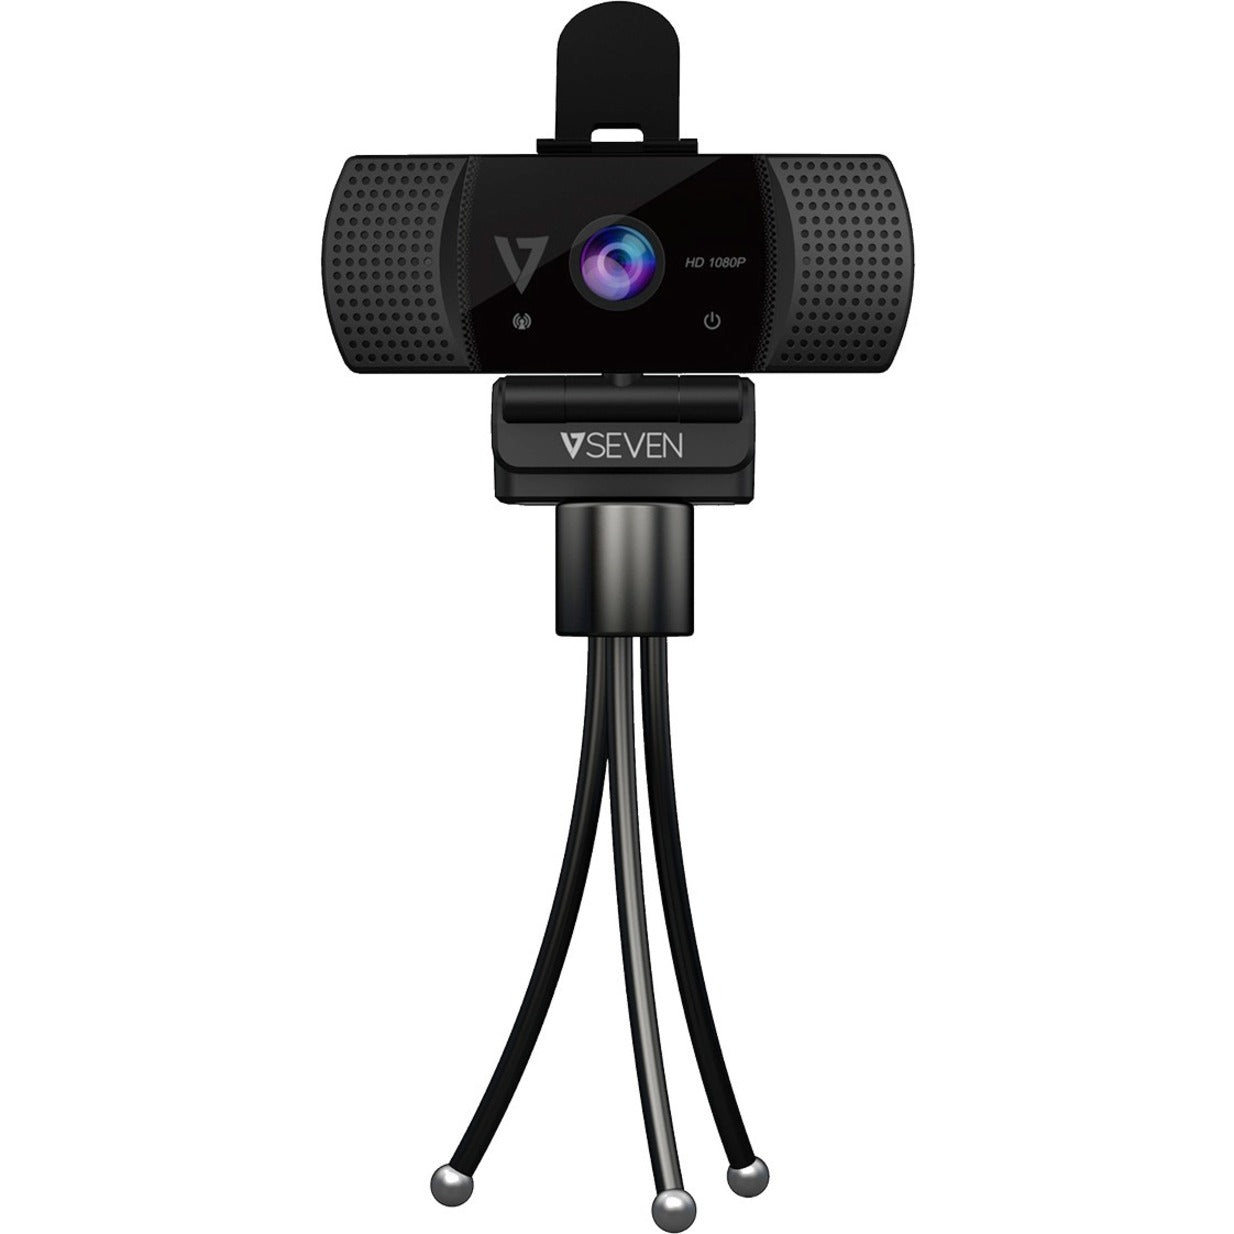 V7 WCF1080P 1080P Web Camera, 2 Megapixel, 30 fps, USB Type A